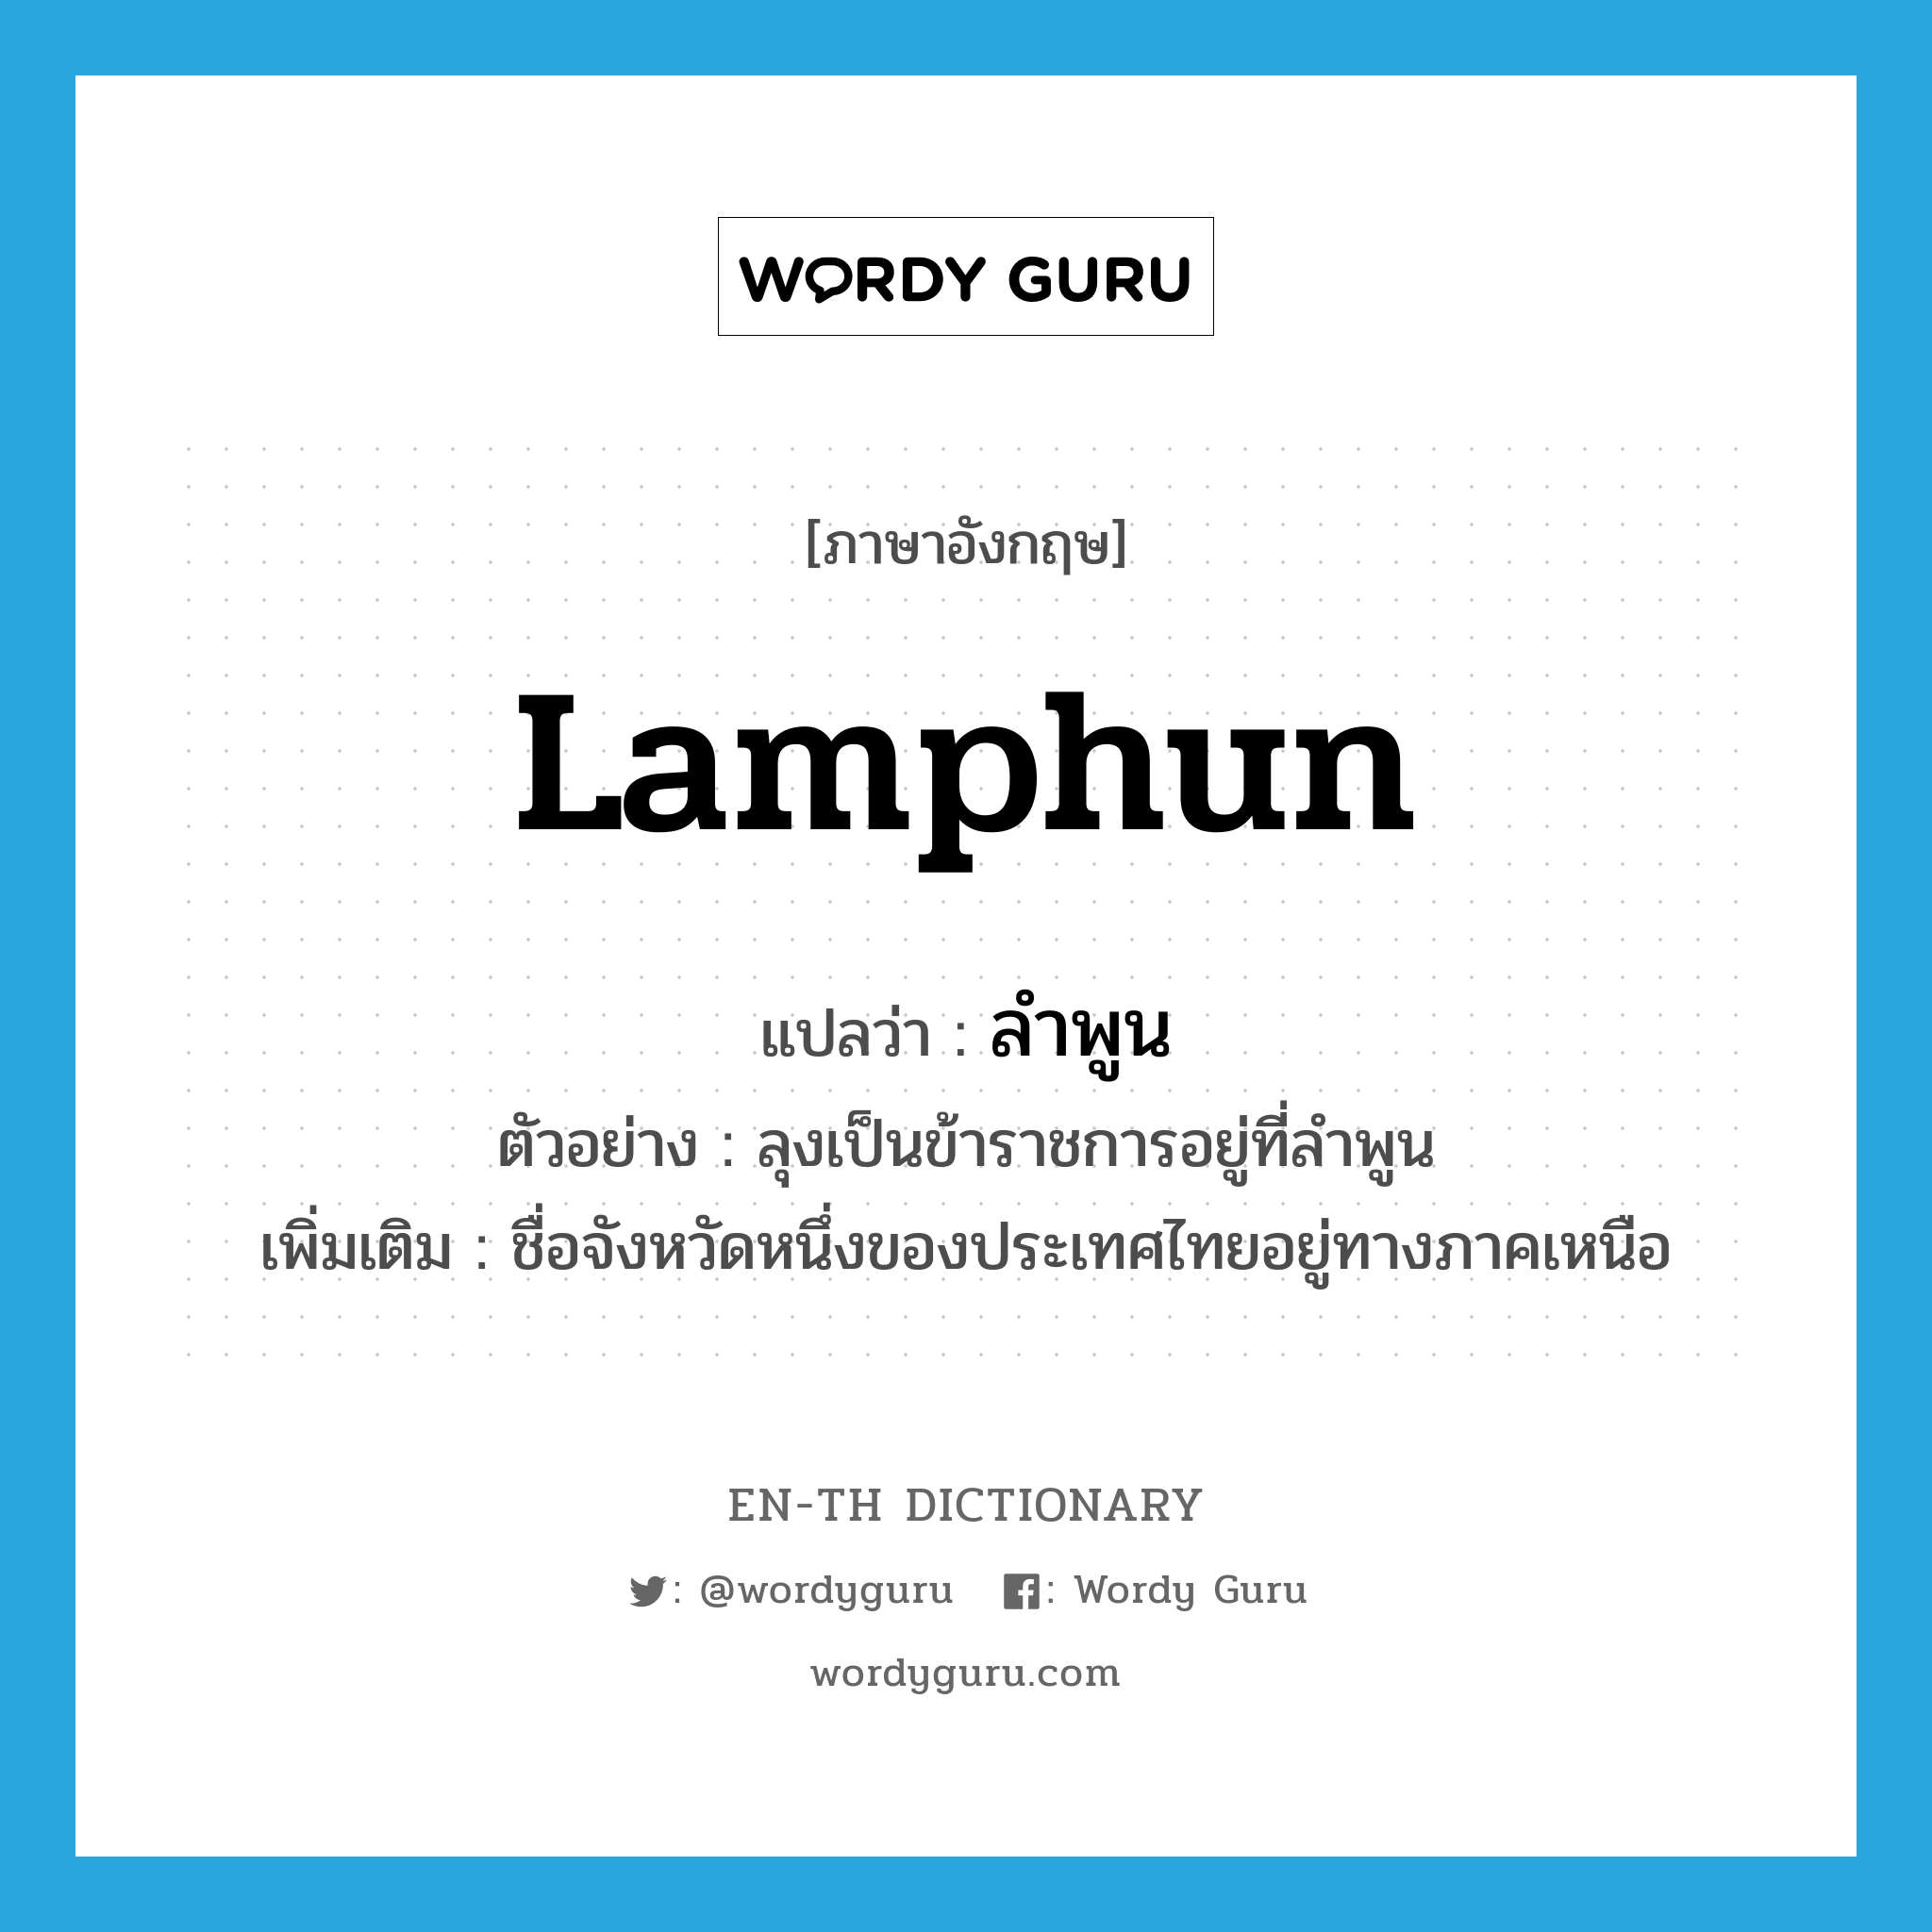 Lamphun แปลว่า?, คำศัพท์ภาษาอังกฤษ Lamphun แปลว่า ลำพูน ประเภท N ตัวอย่าง ลุงเป็นข้าราชการอยู่ที่ลำพูน เพิ่มเติม ชื่อจังหวัดหนึ่งของประเทศไทยอยู่ทางภาคเหนือ หมวด N